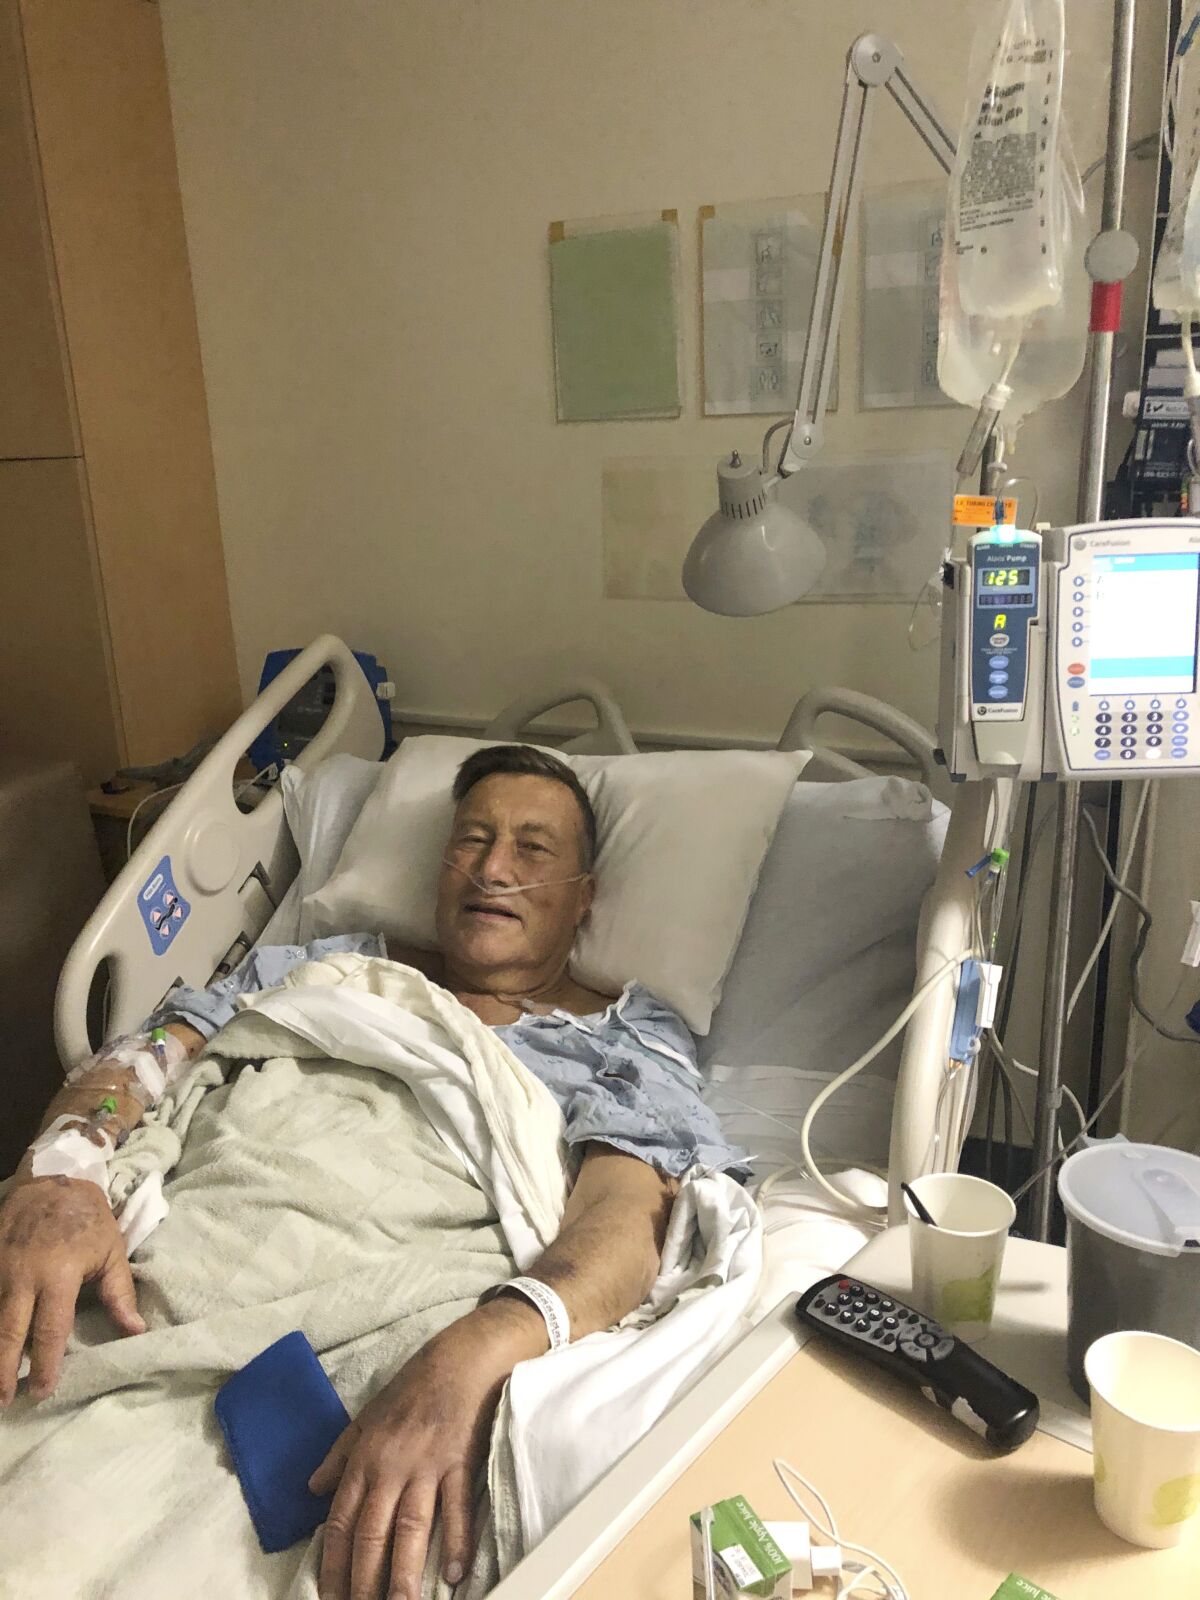 Herb Hoeptner after his kidney transplant surgery.